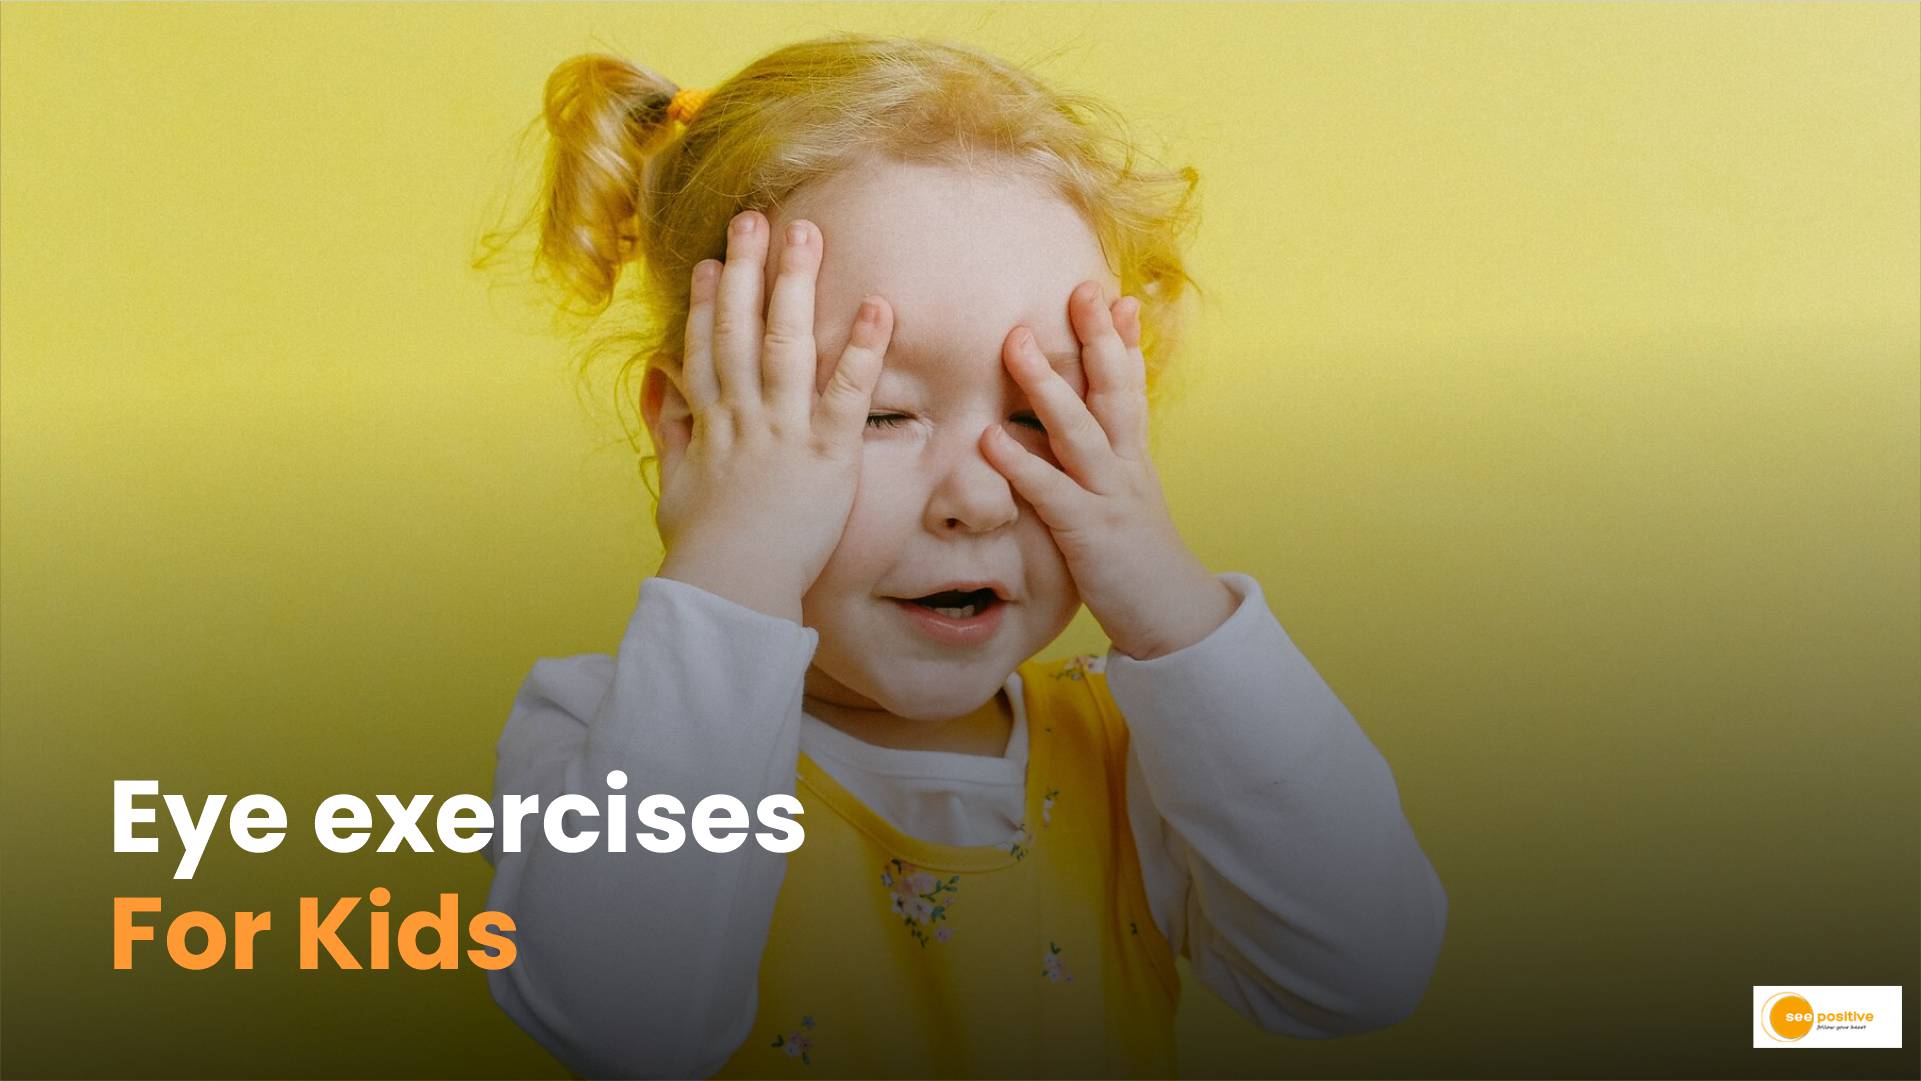 Eye exercises for kids